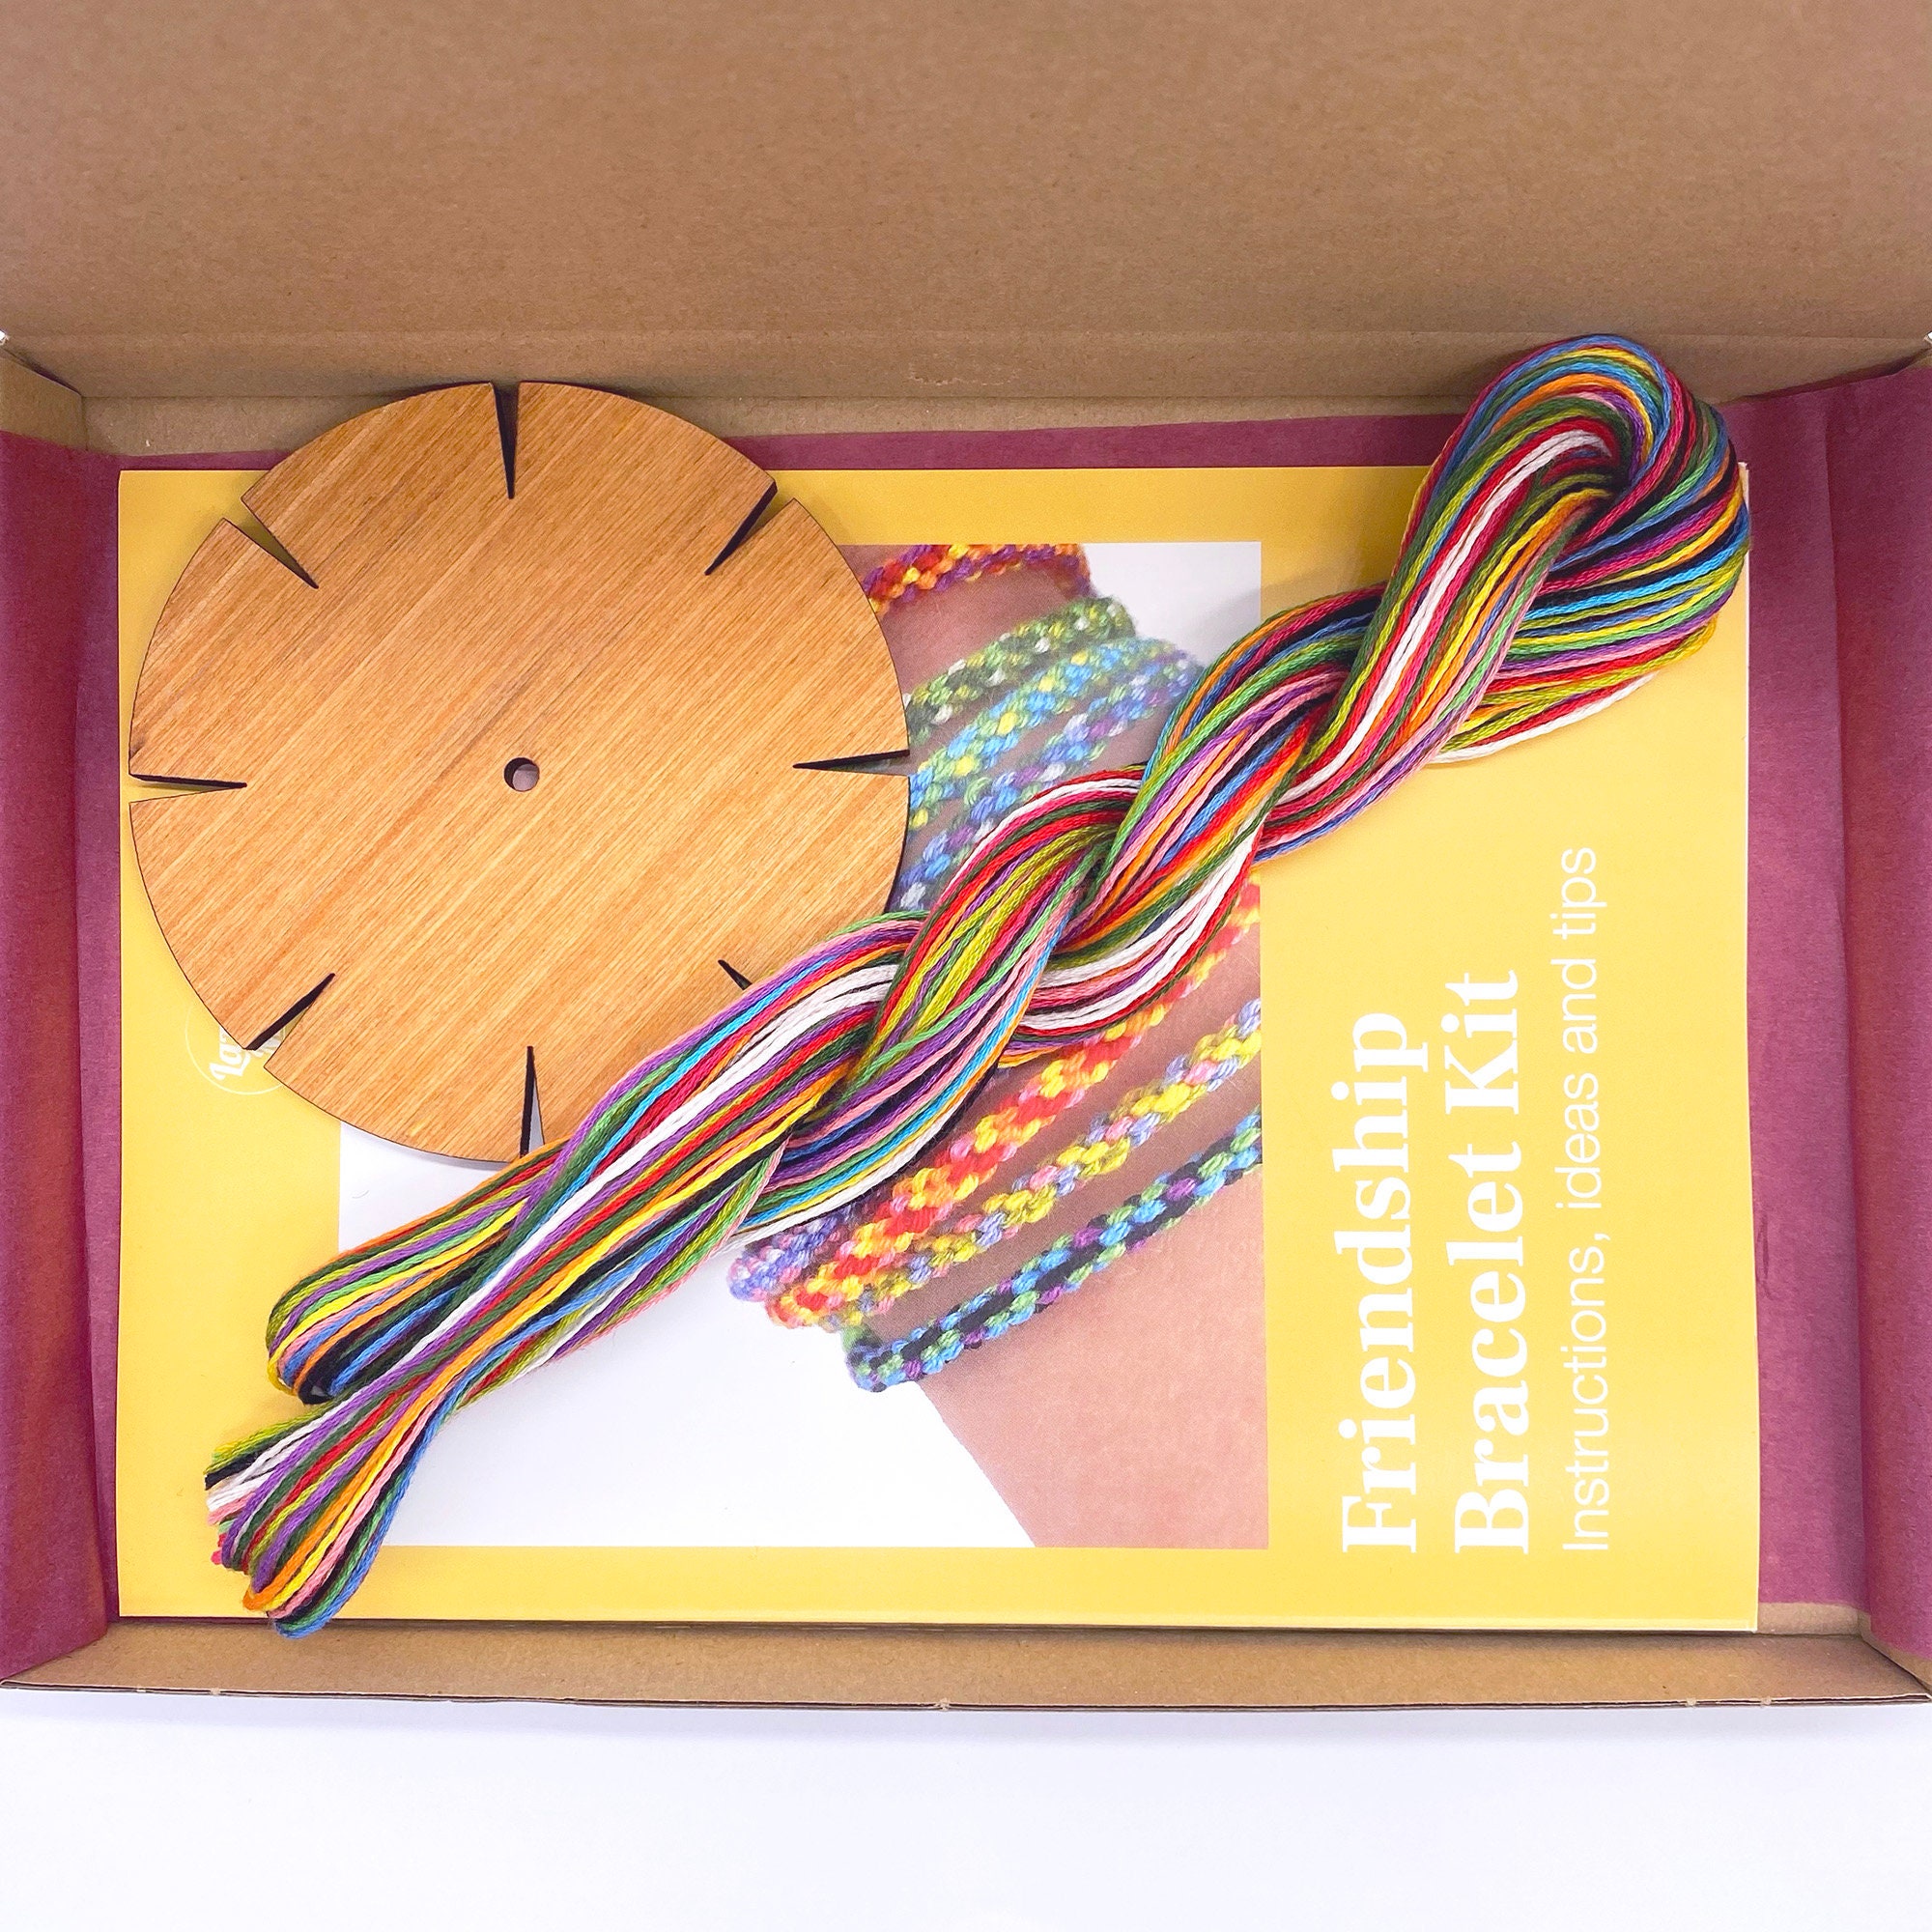 Bracelet Loom Kits - Crafty Jak's